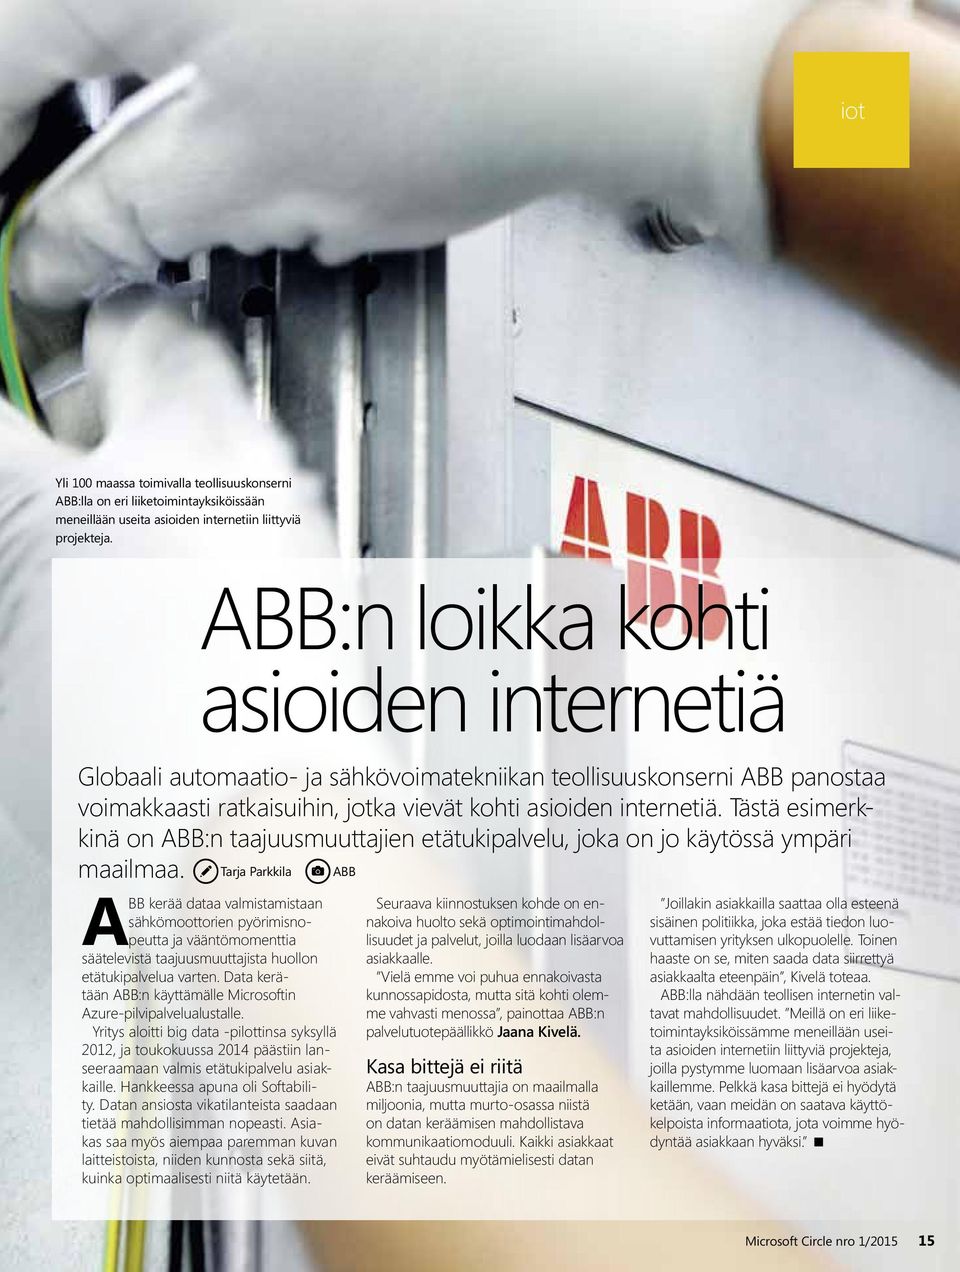 Tästä esimerkkinä on ABB:n taajuusmuuttajien etätukipalvelu, joka on jo käytössä ympäri maailmaa.